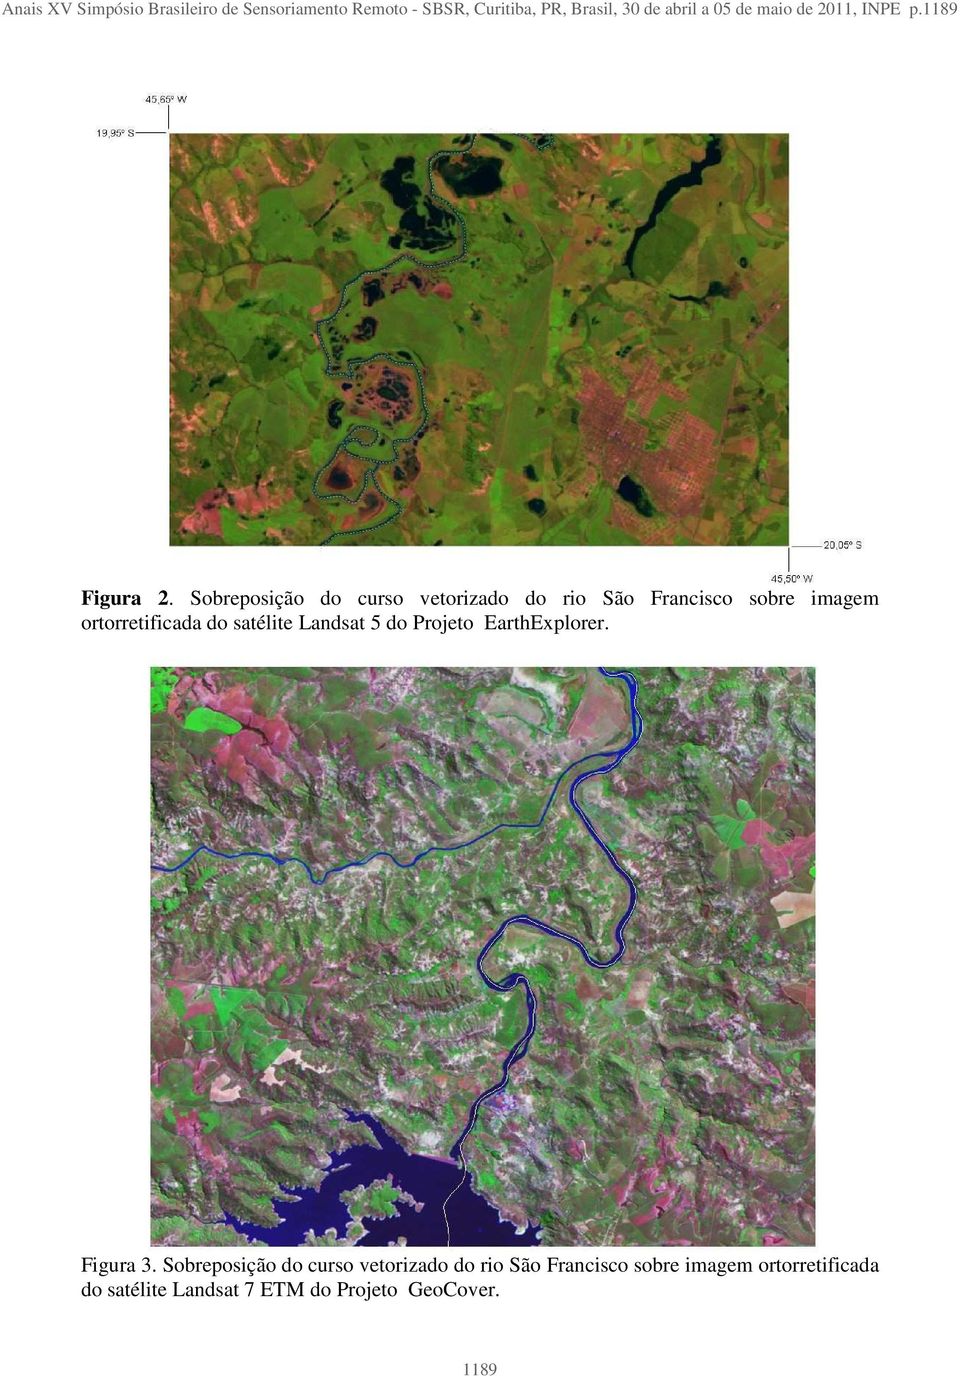 Sobreposição do curso vetorizado do rio São Francisco sobre imagem ortorretificada do satélite Landsat